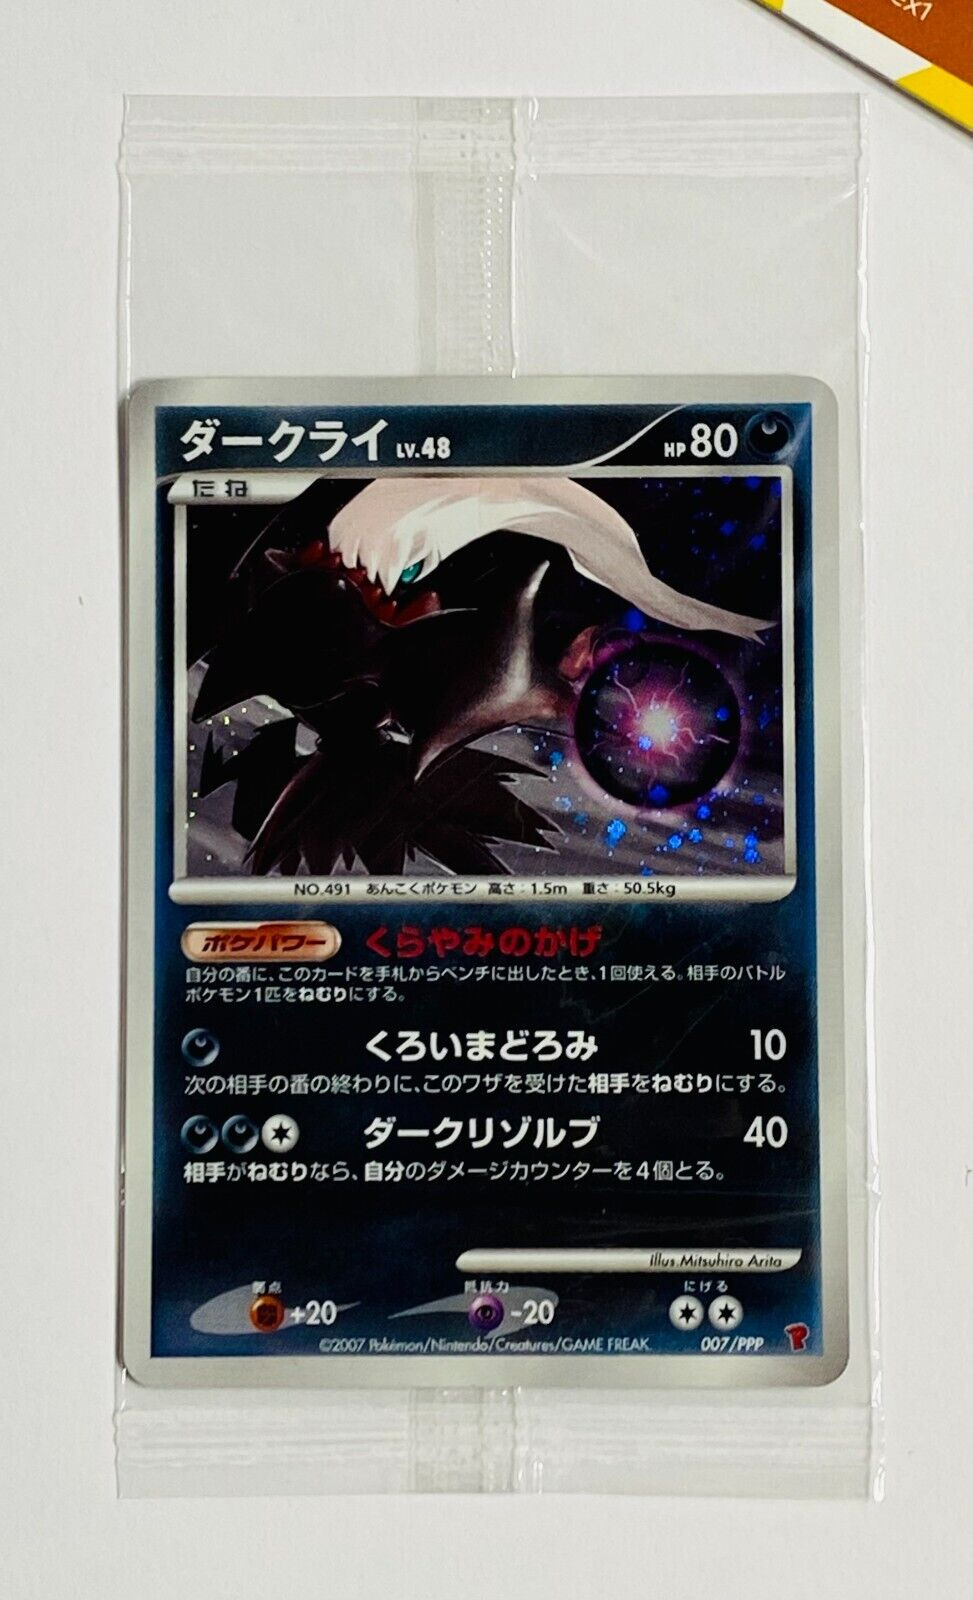 Pokemon Darkrai #007/PPP Holo Promotional Cards Promo Sealed 2007 Japanese